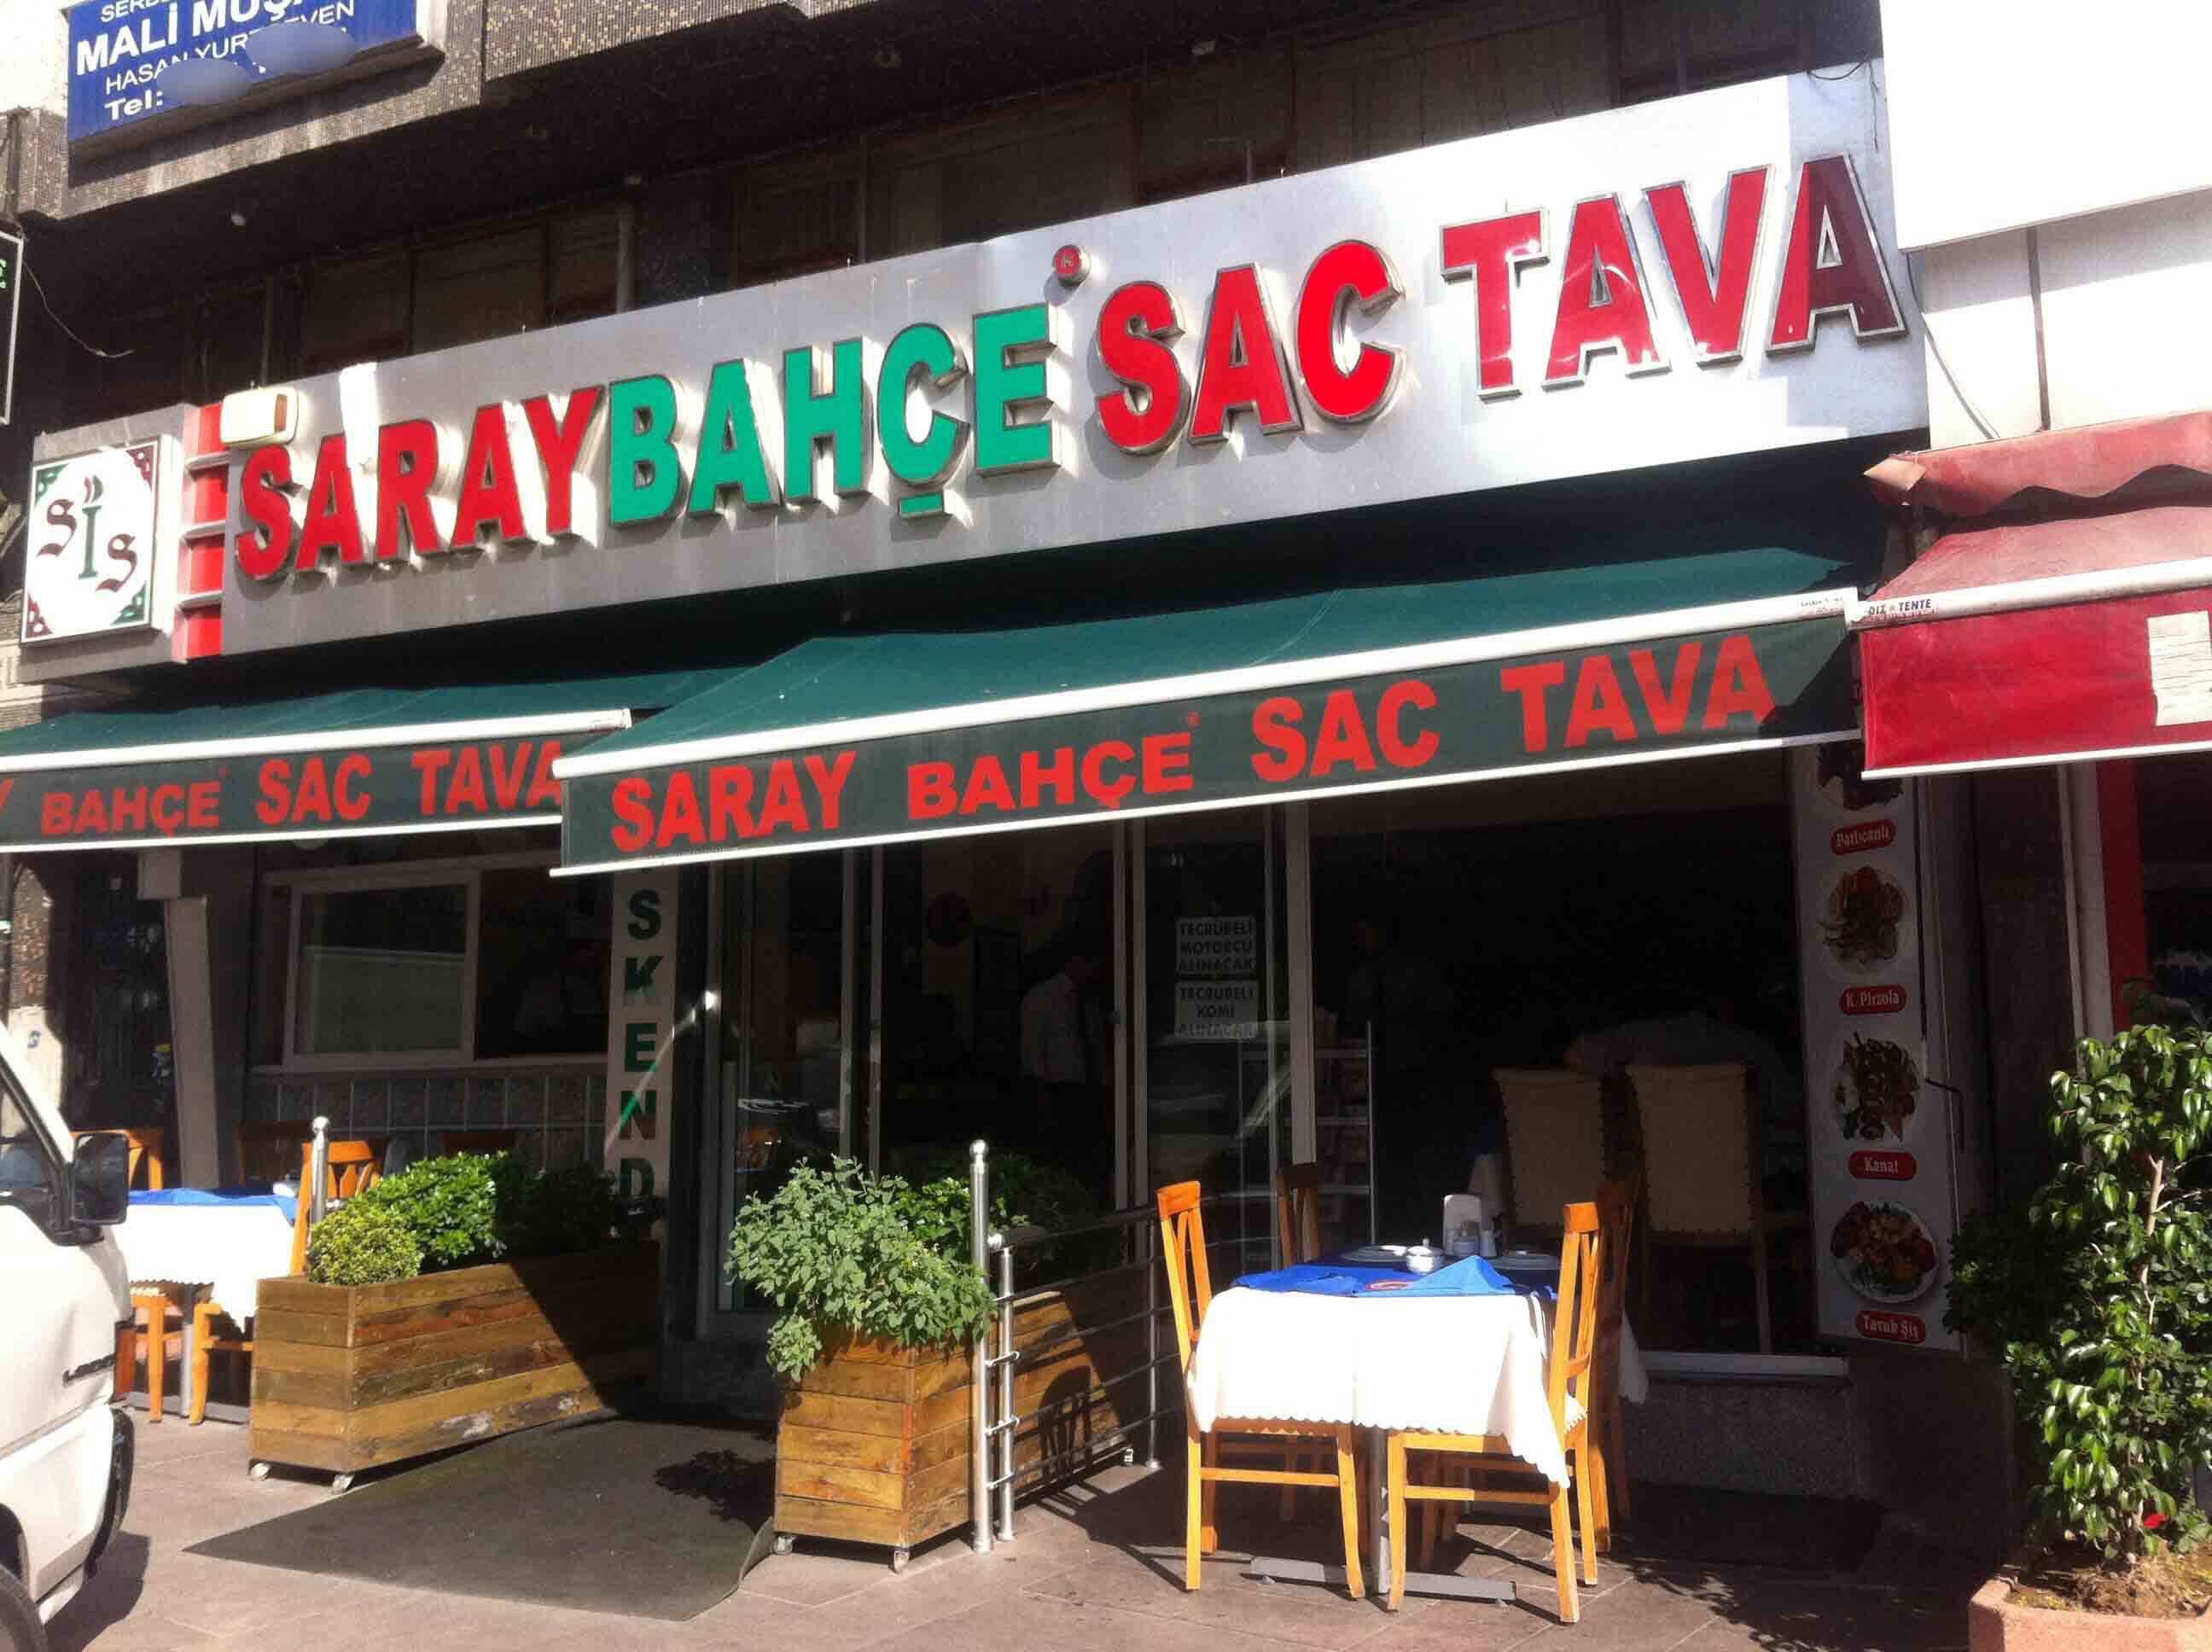 Saray Bahce Sac Tava Soganli Istanbul Zomato